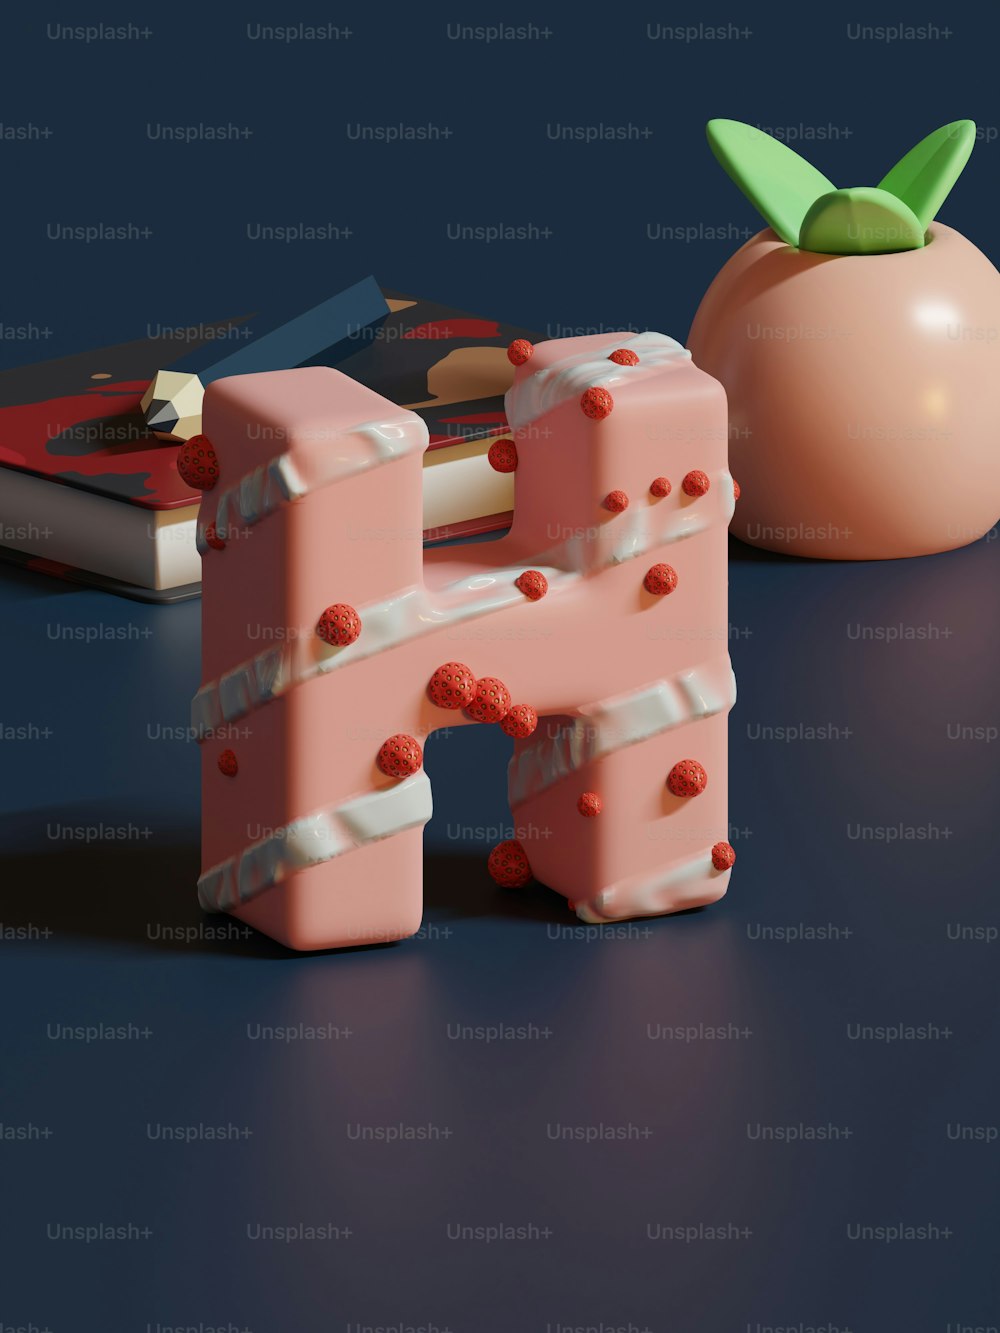 テーブルの上のトマトの隣に座っているピンクの物体